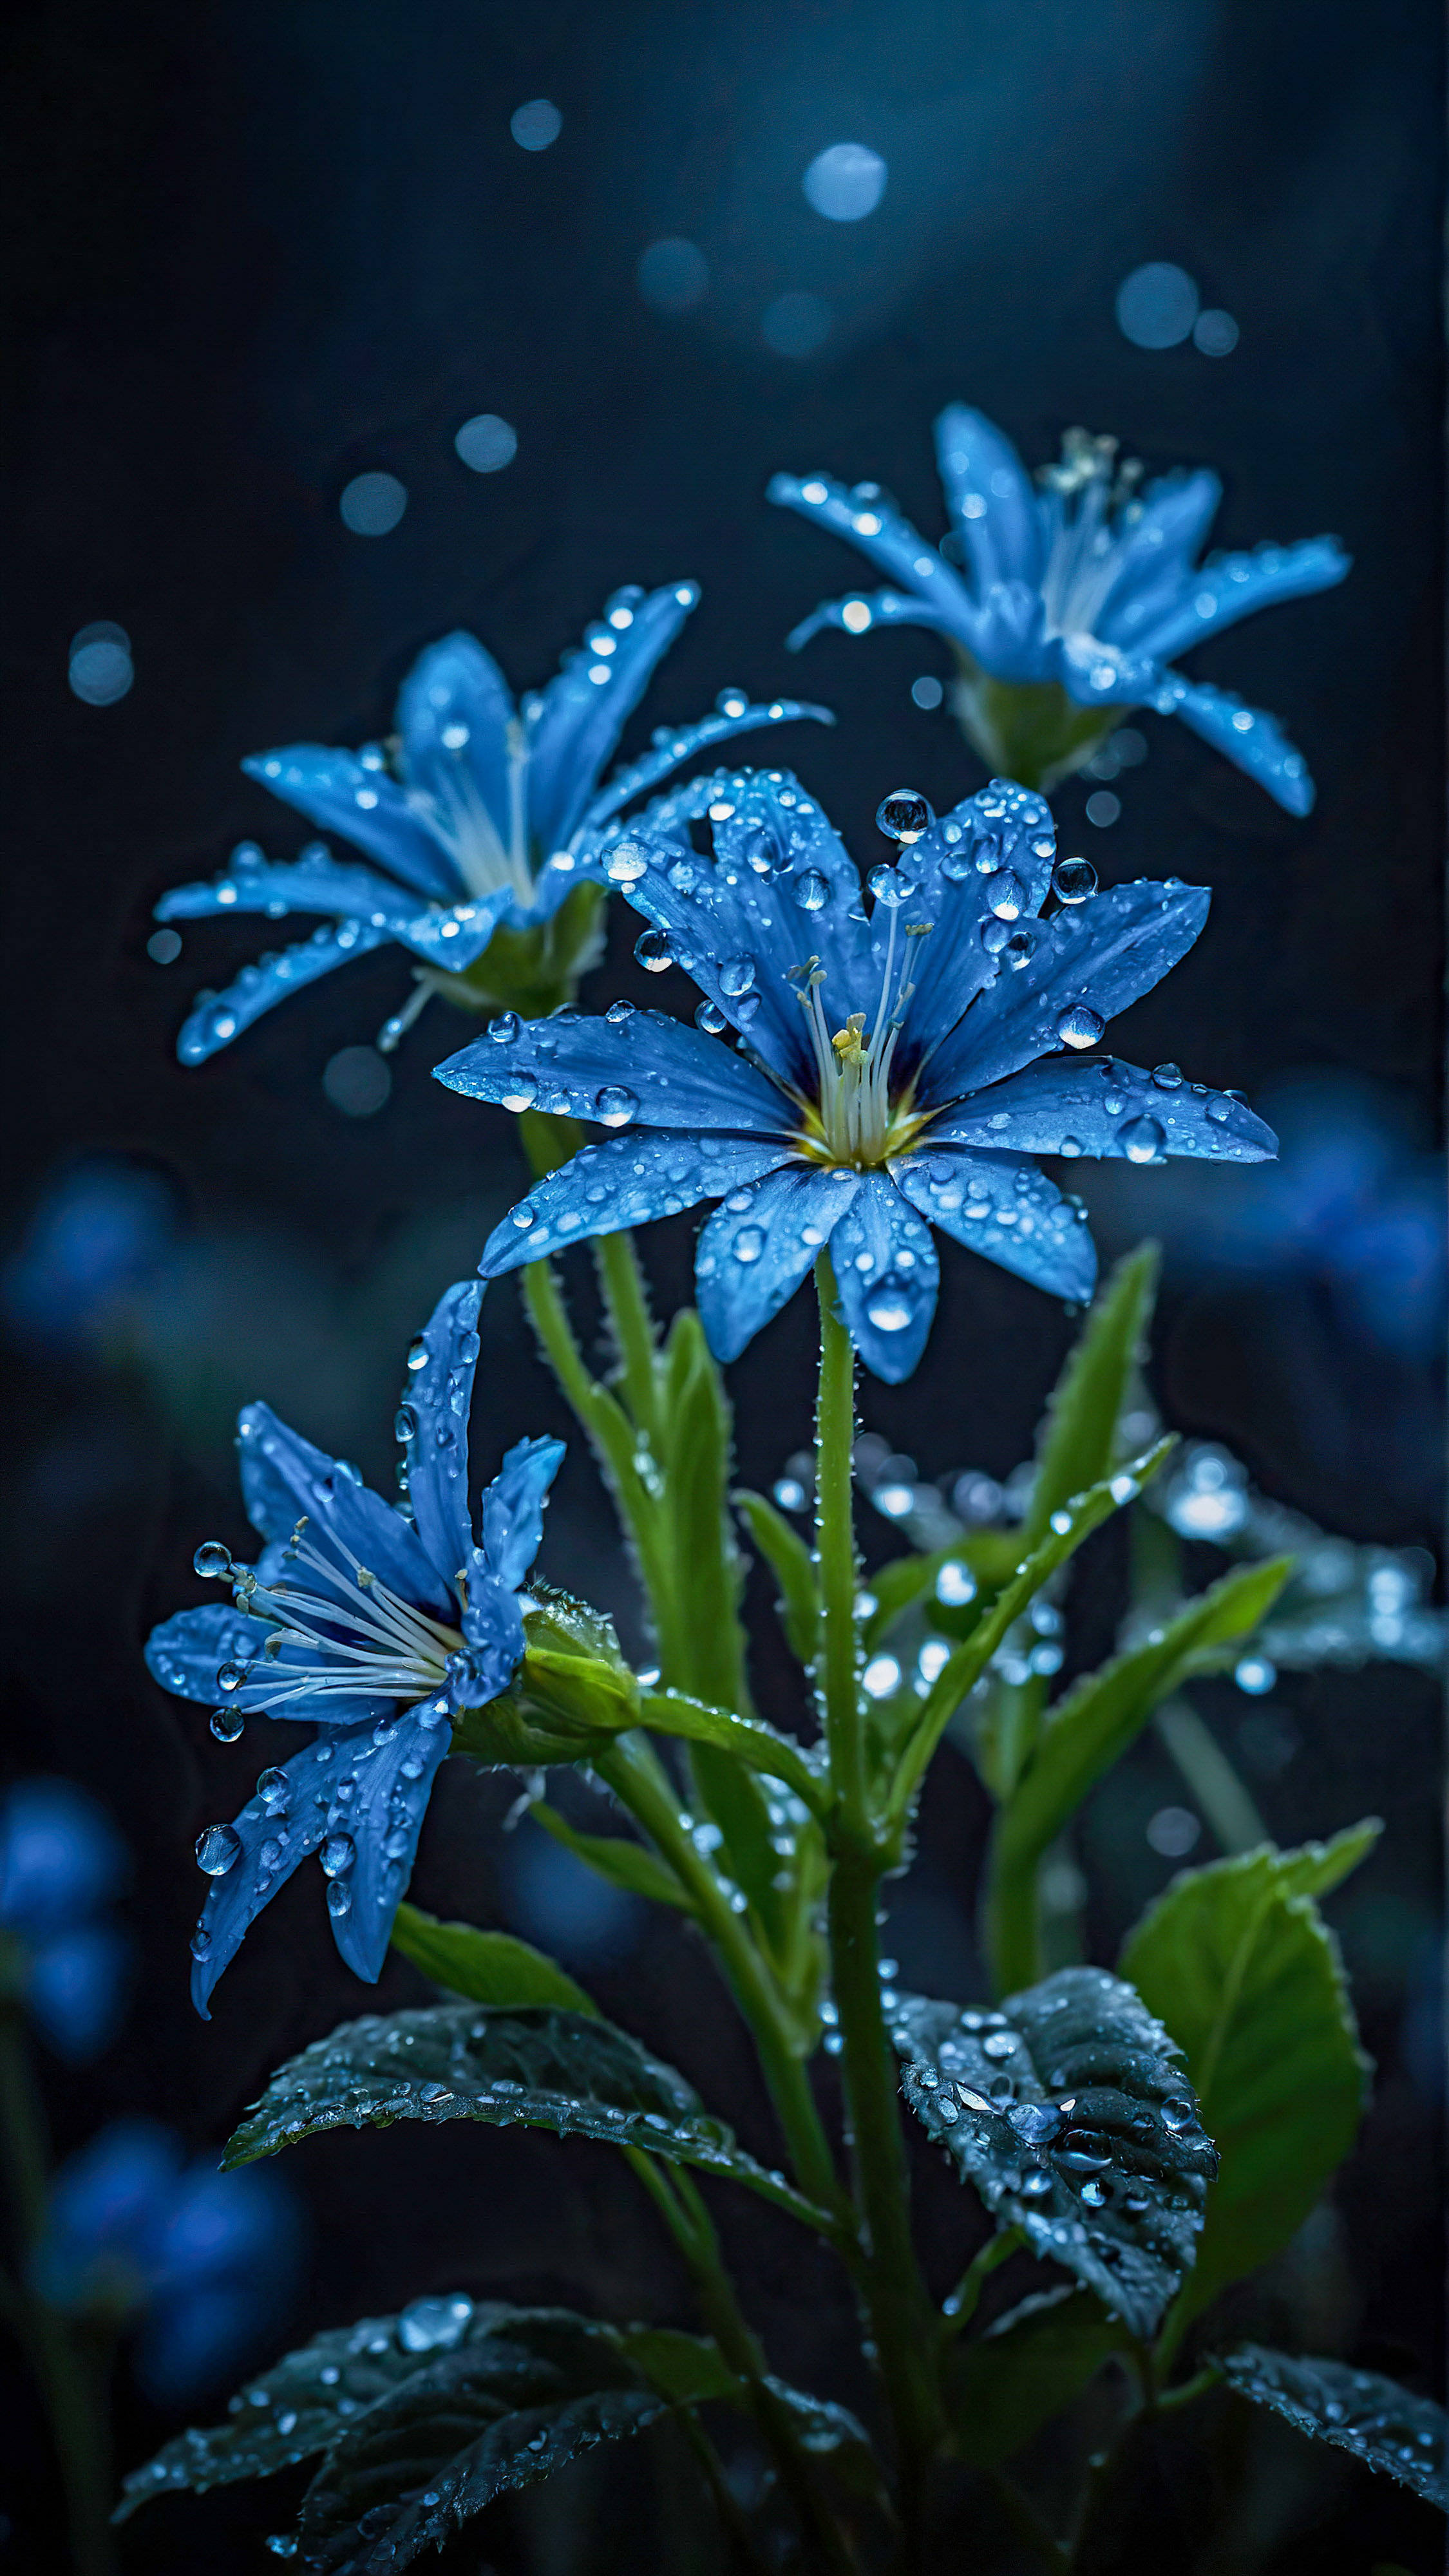 Faites l'expérience de la tranquillité de la nature avec notre beau fond d'écran pour iPhone, une scène sereine et mystique de fleurs bleues lumineuses avec des gouttes de rosée, placées contre un arrière-plan sombre et flou.